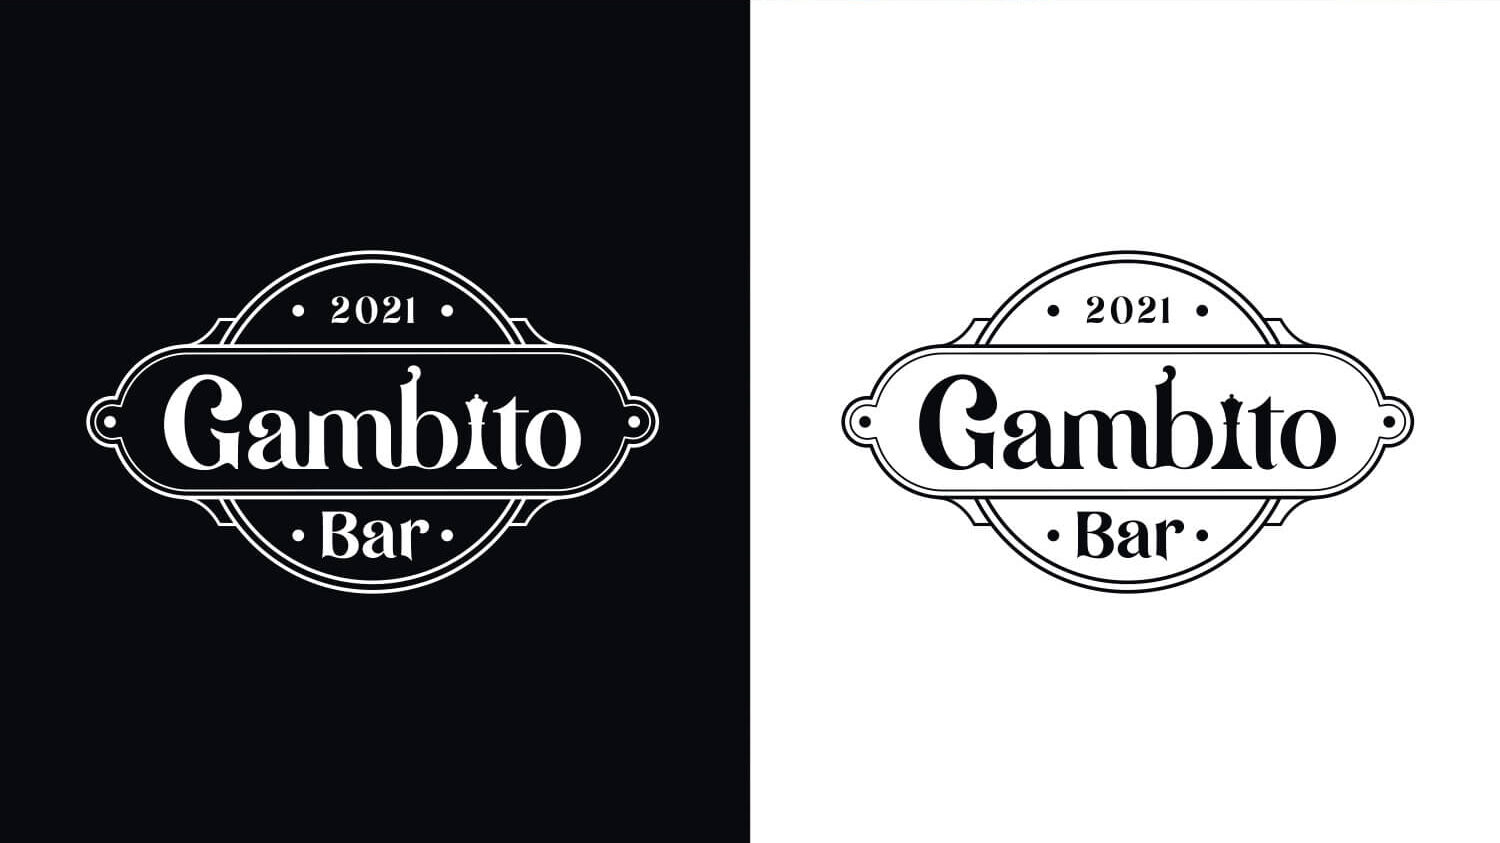 GAMBITO BAR - Design estratético de marca on Behance